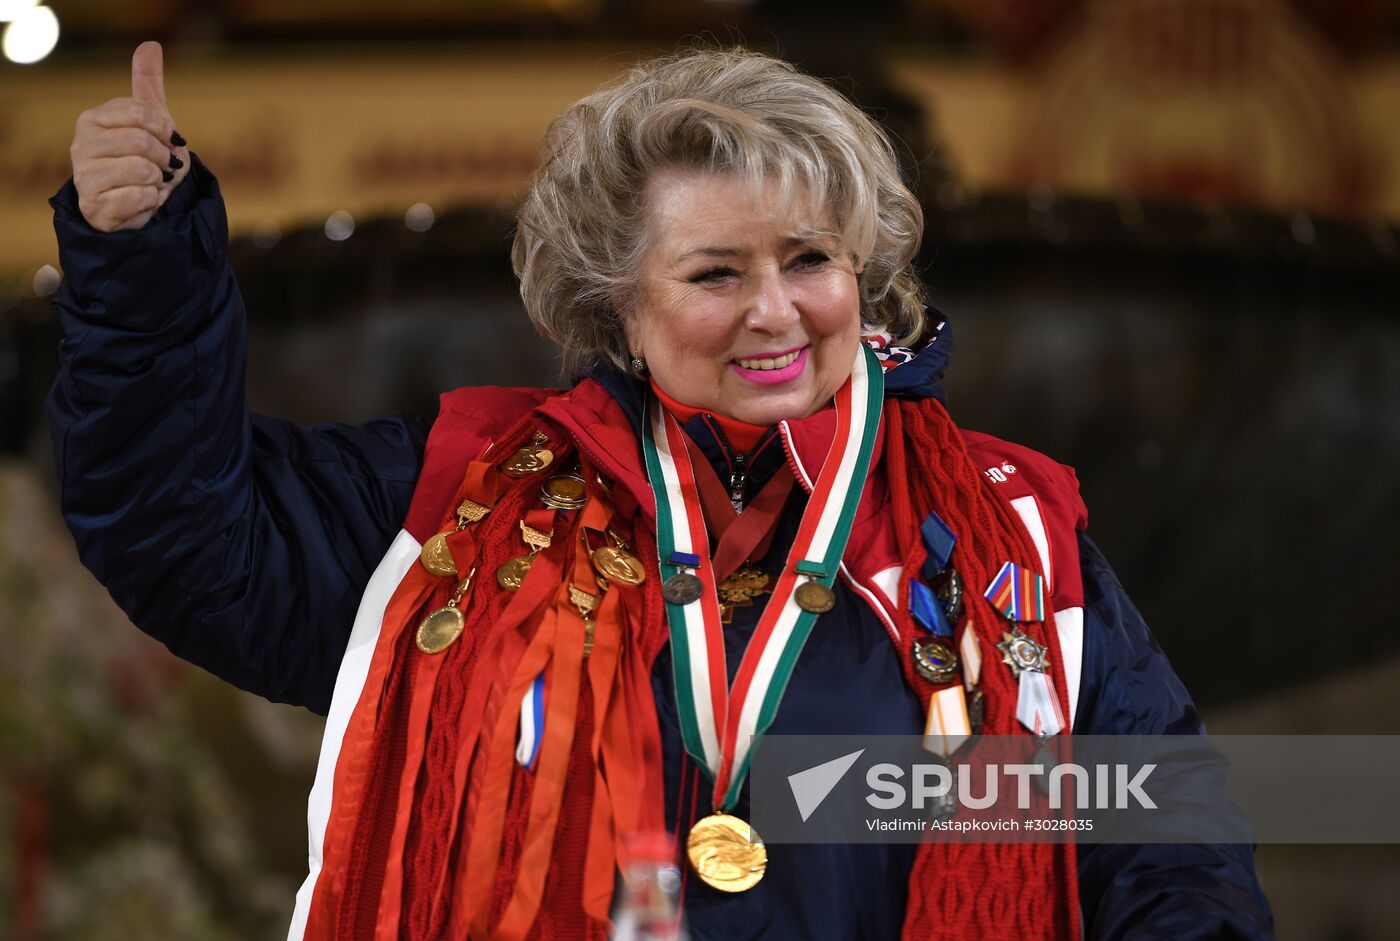 Tatyana Tarasova celebrates 70th birthday